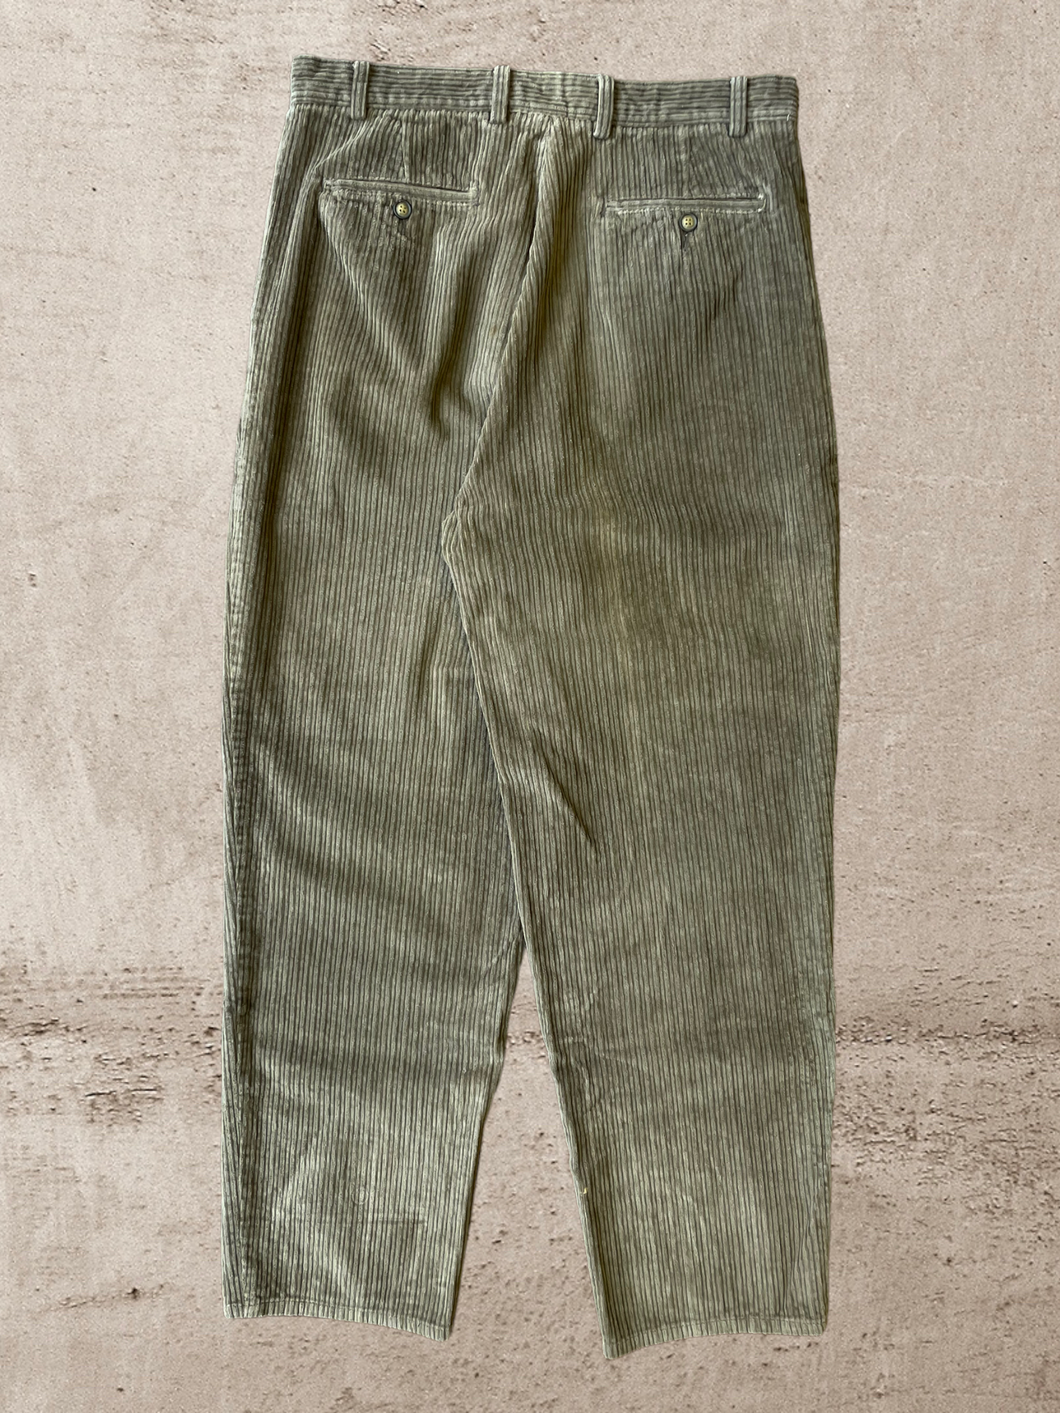 Vintage Corduroy Brown Pants - 36x30